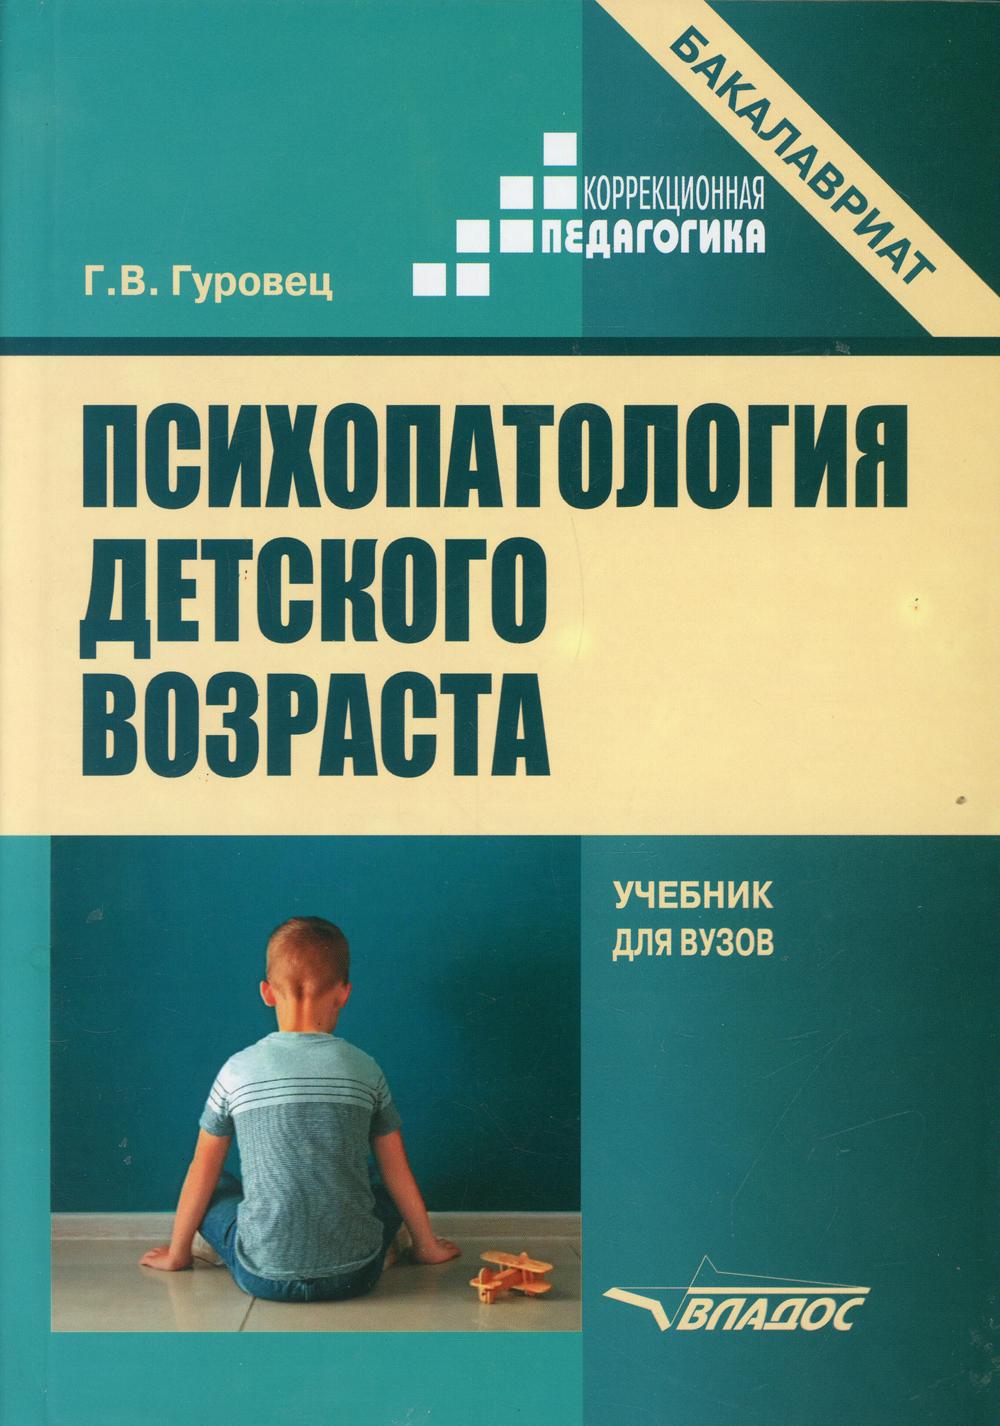 фото Книга психопатология детского возраста владос